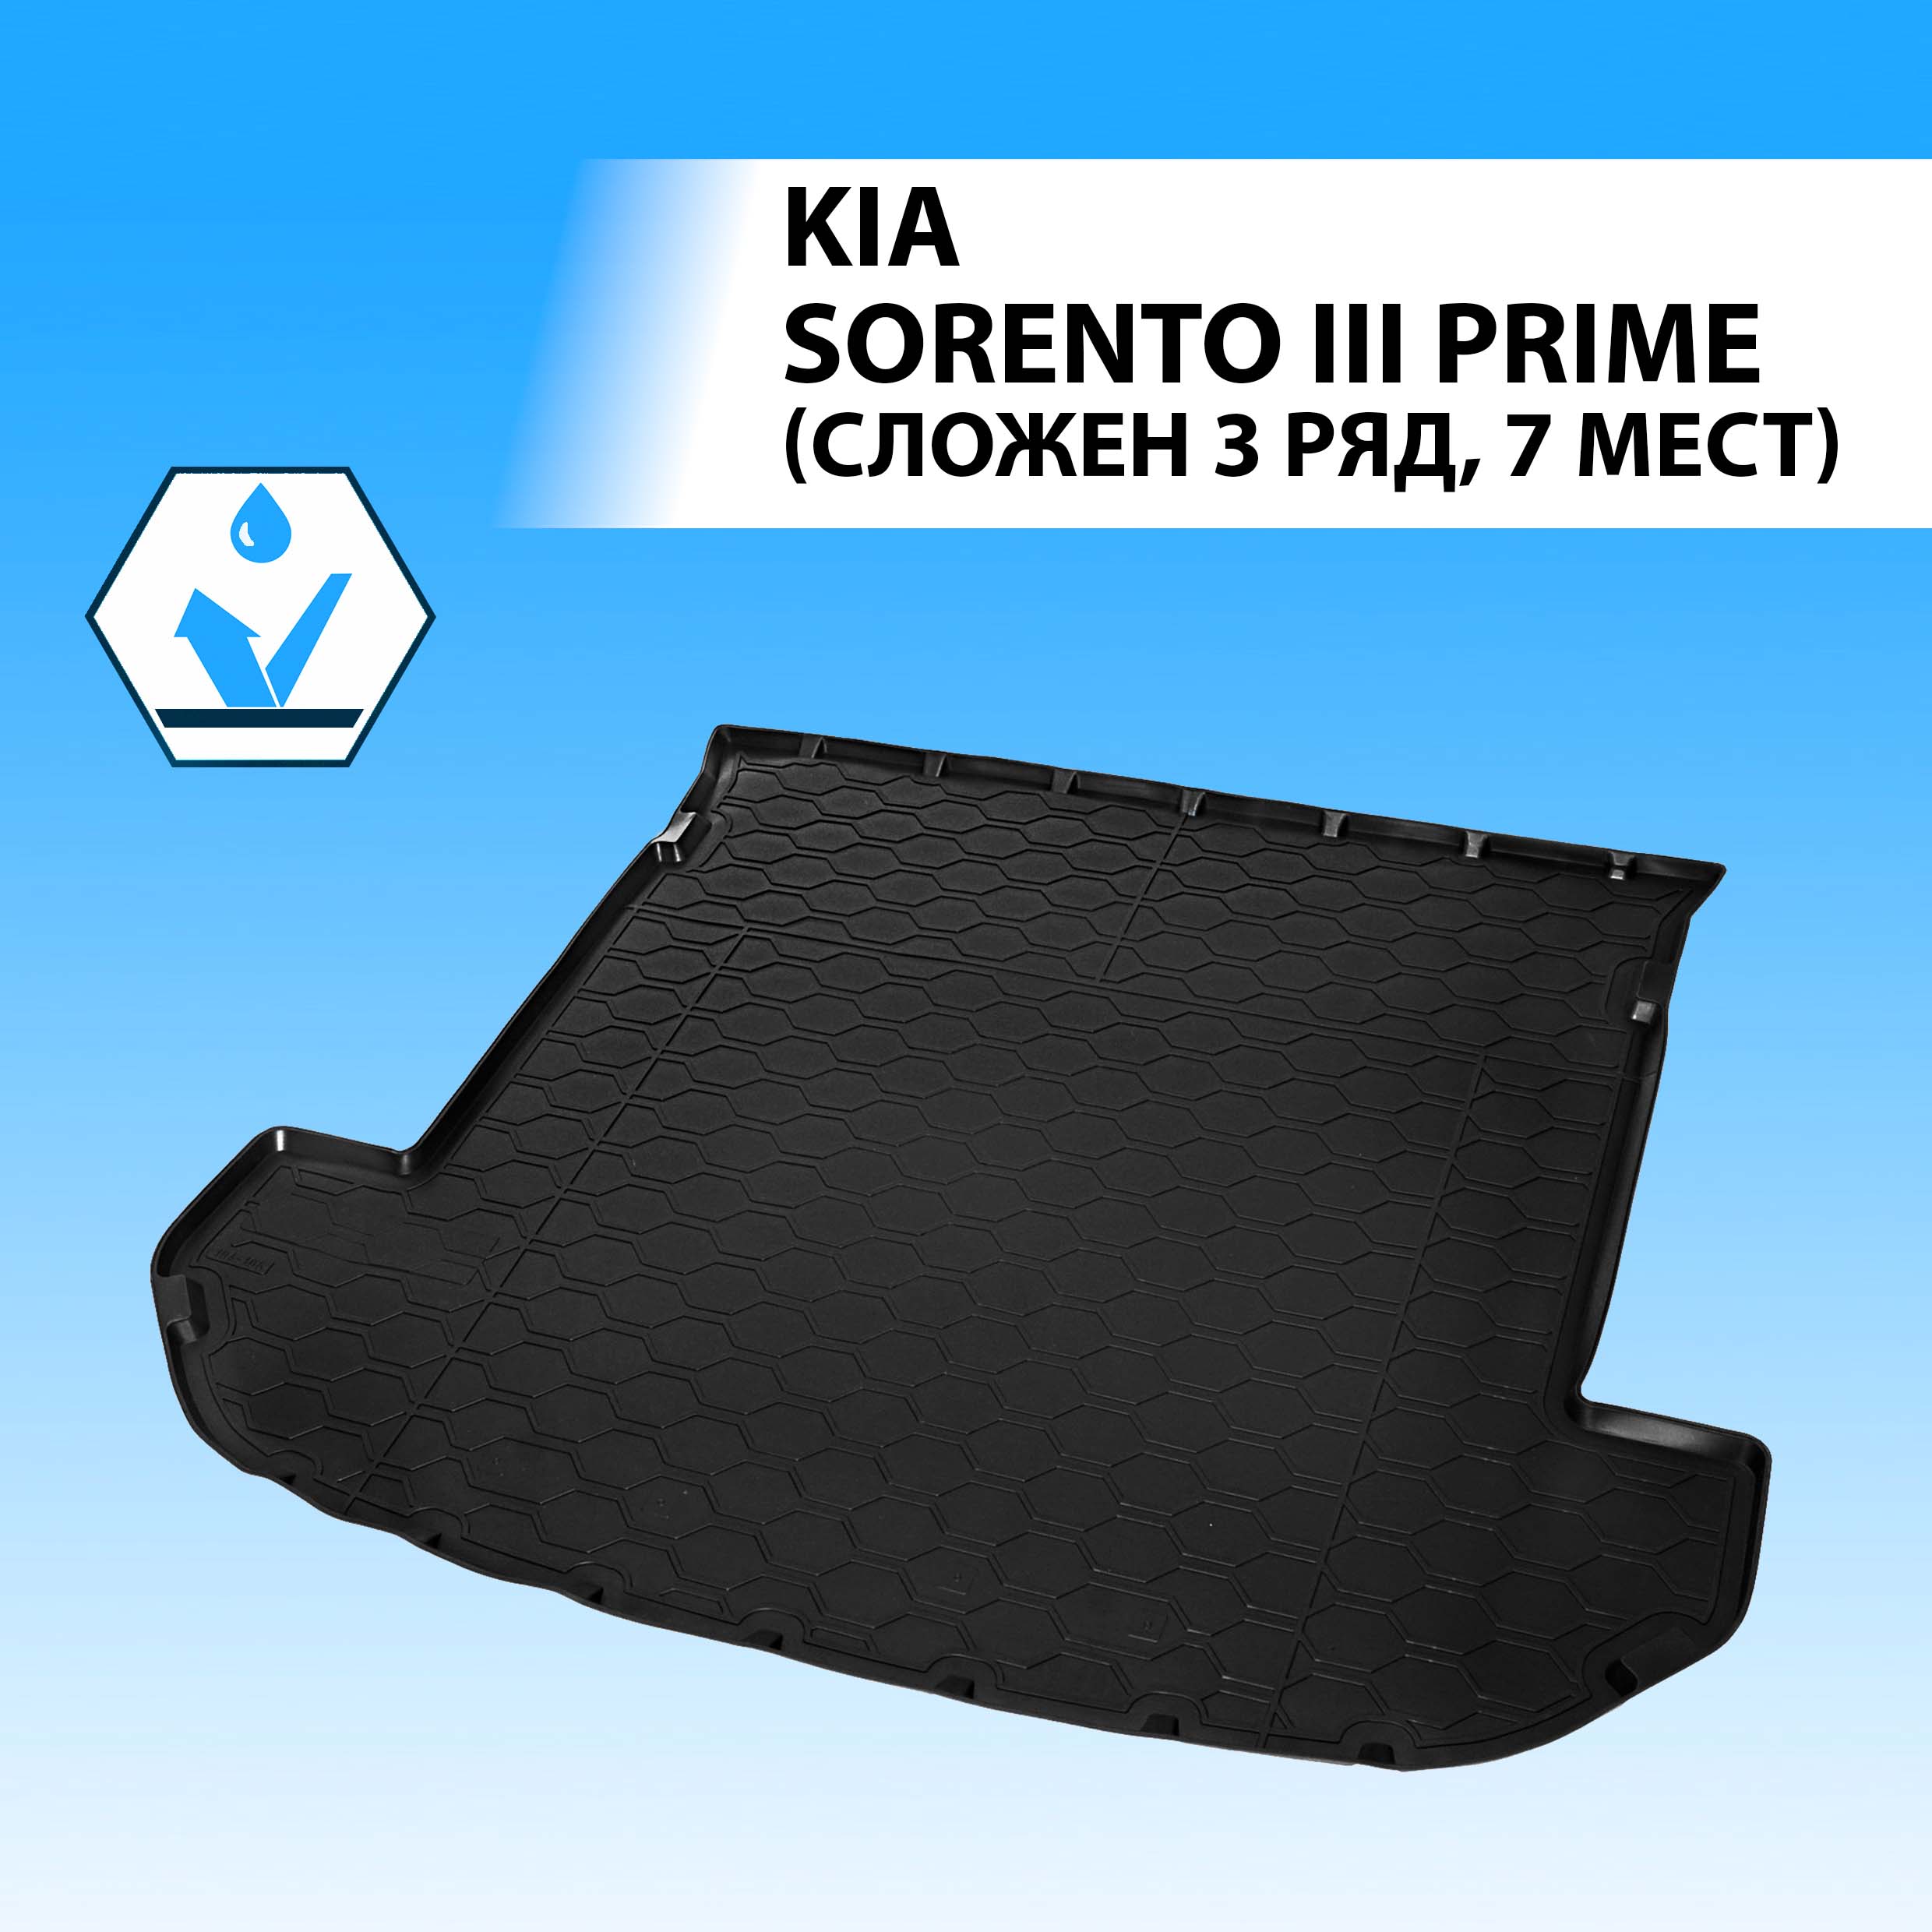 Коврик в багажник RIVAL для Kia Sorento III Prime сложен. 3 ряд, 7 мест 2015-2020 12804004  - купить